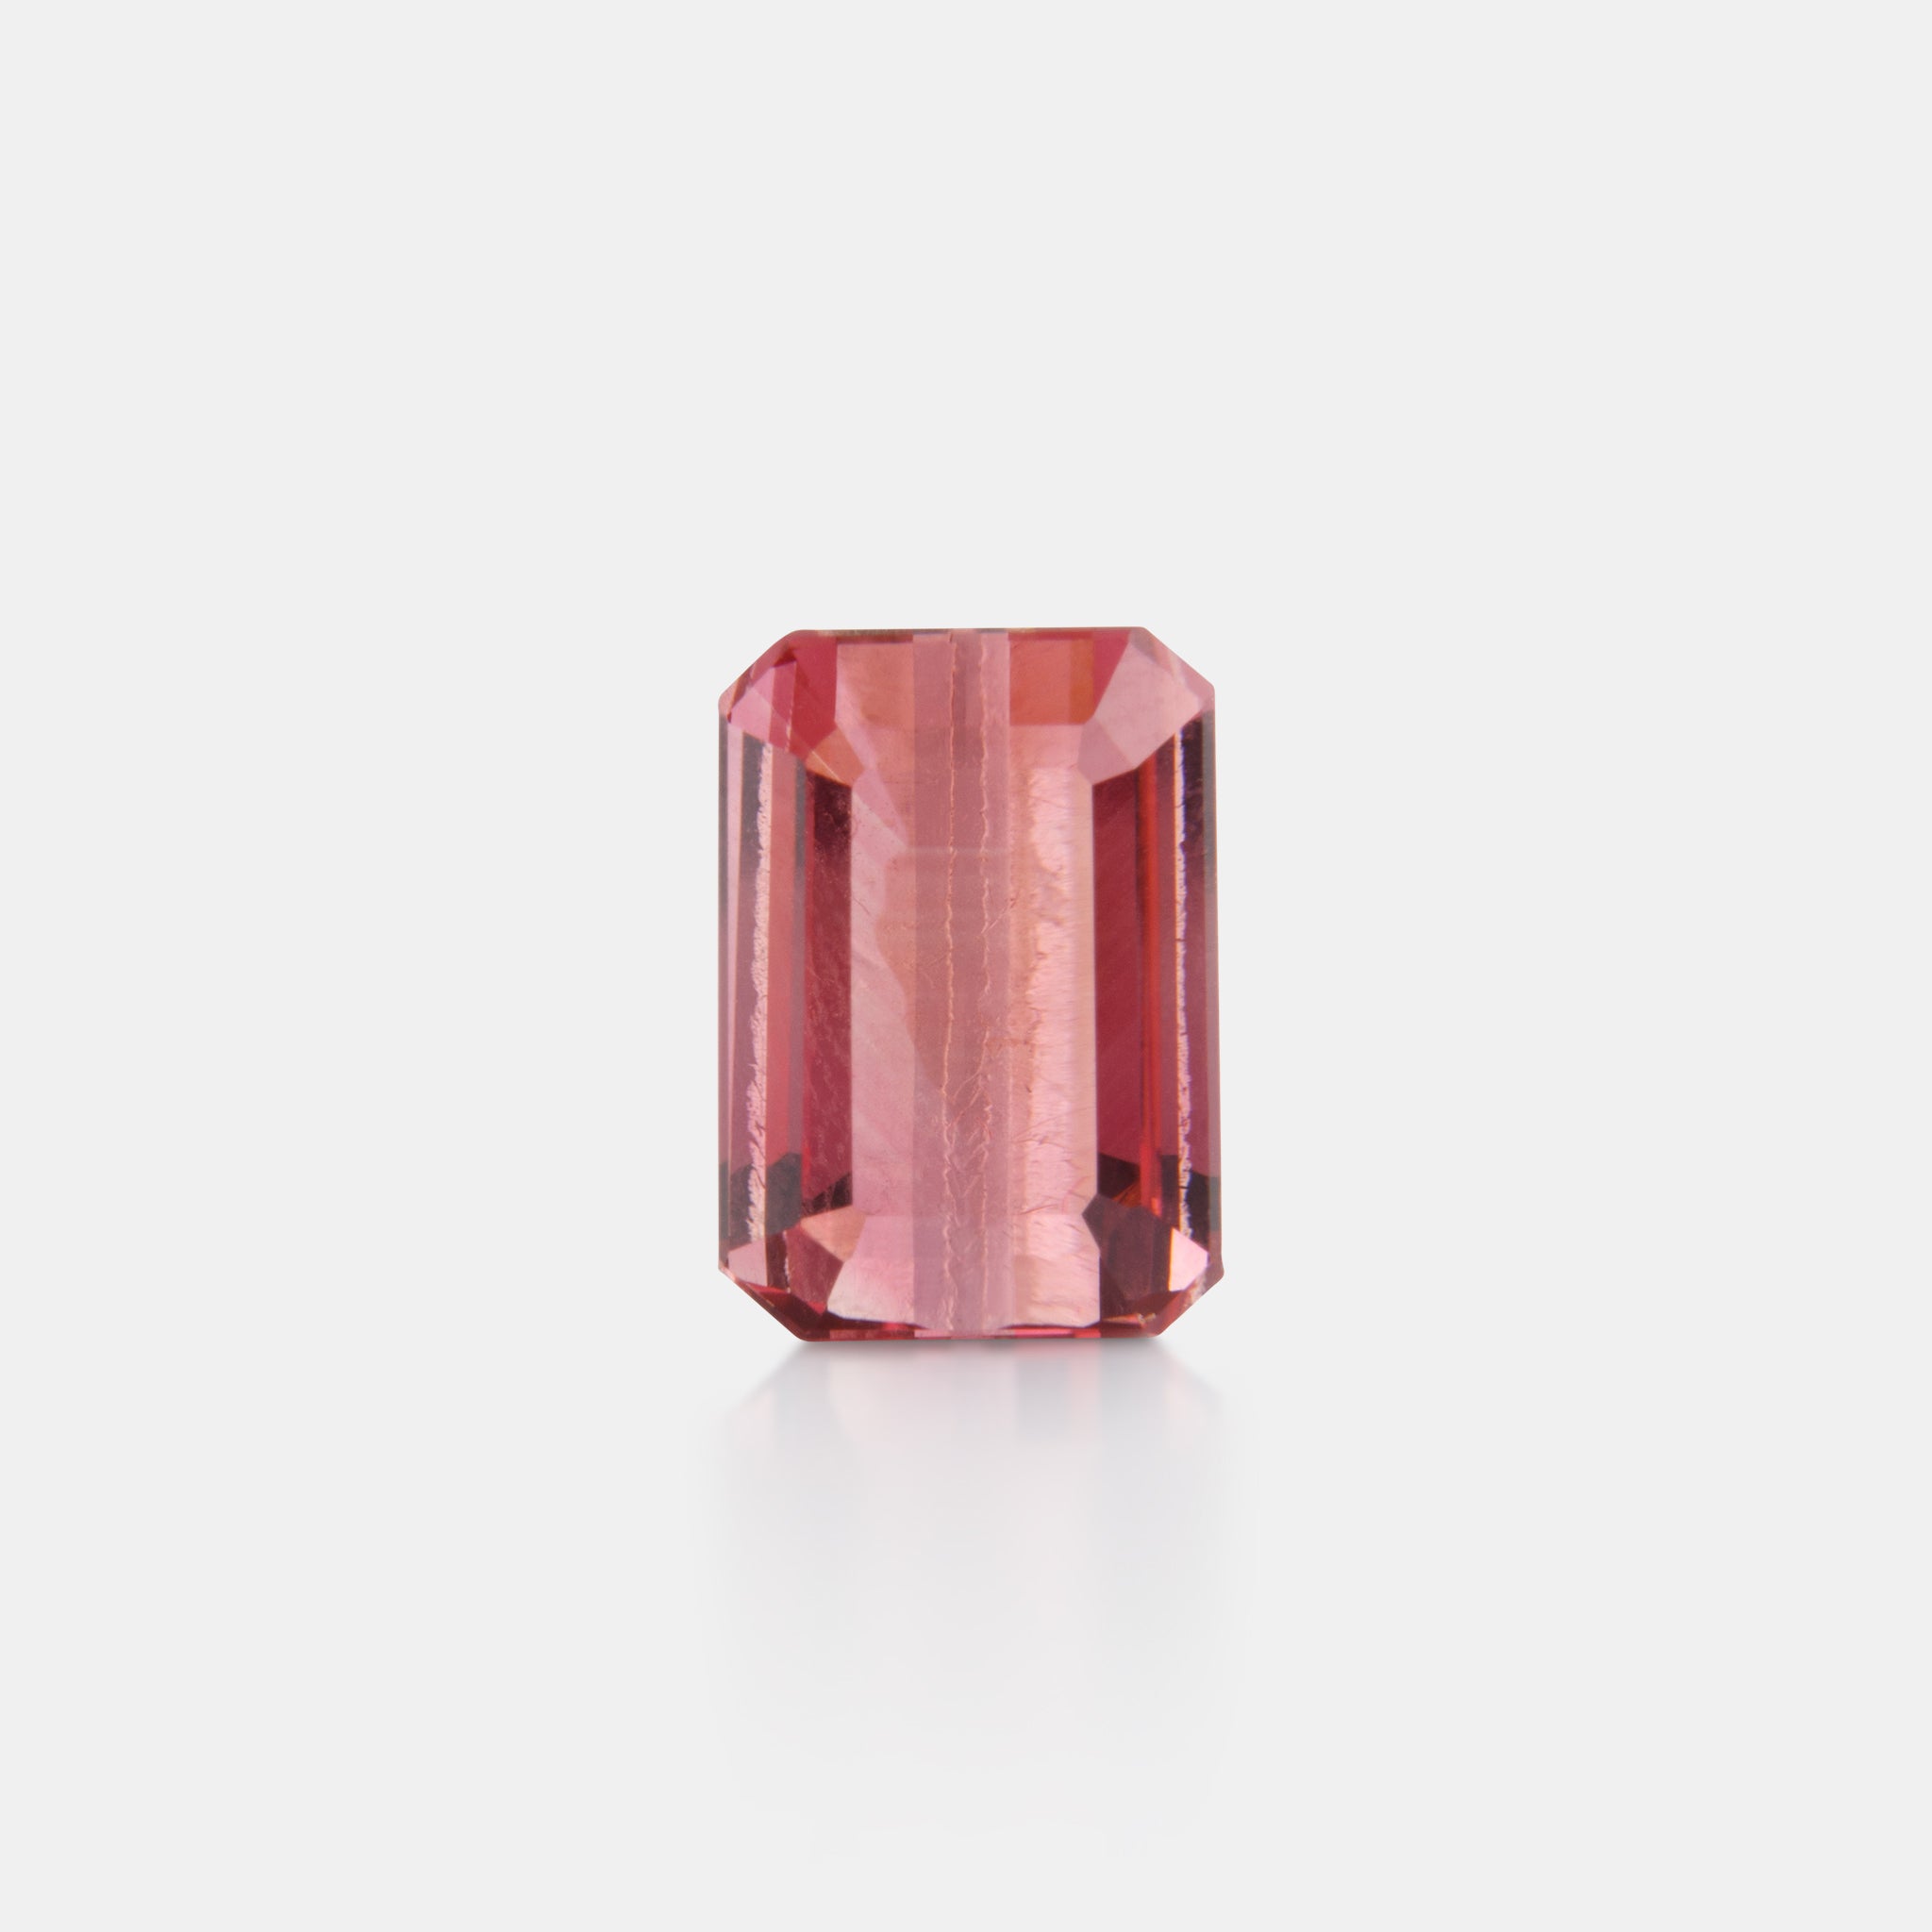 Loose Stone 4.71 Emerald Cut Pink Tourmaline – Lao Feng Xiang